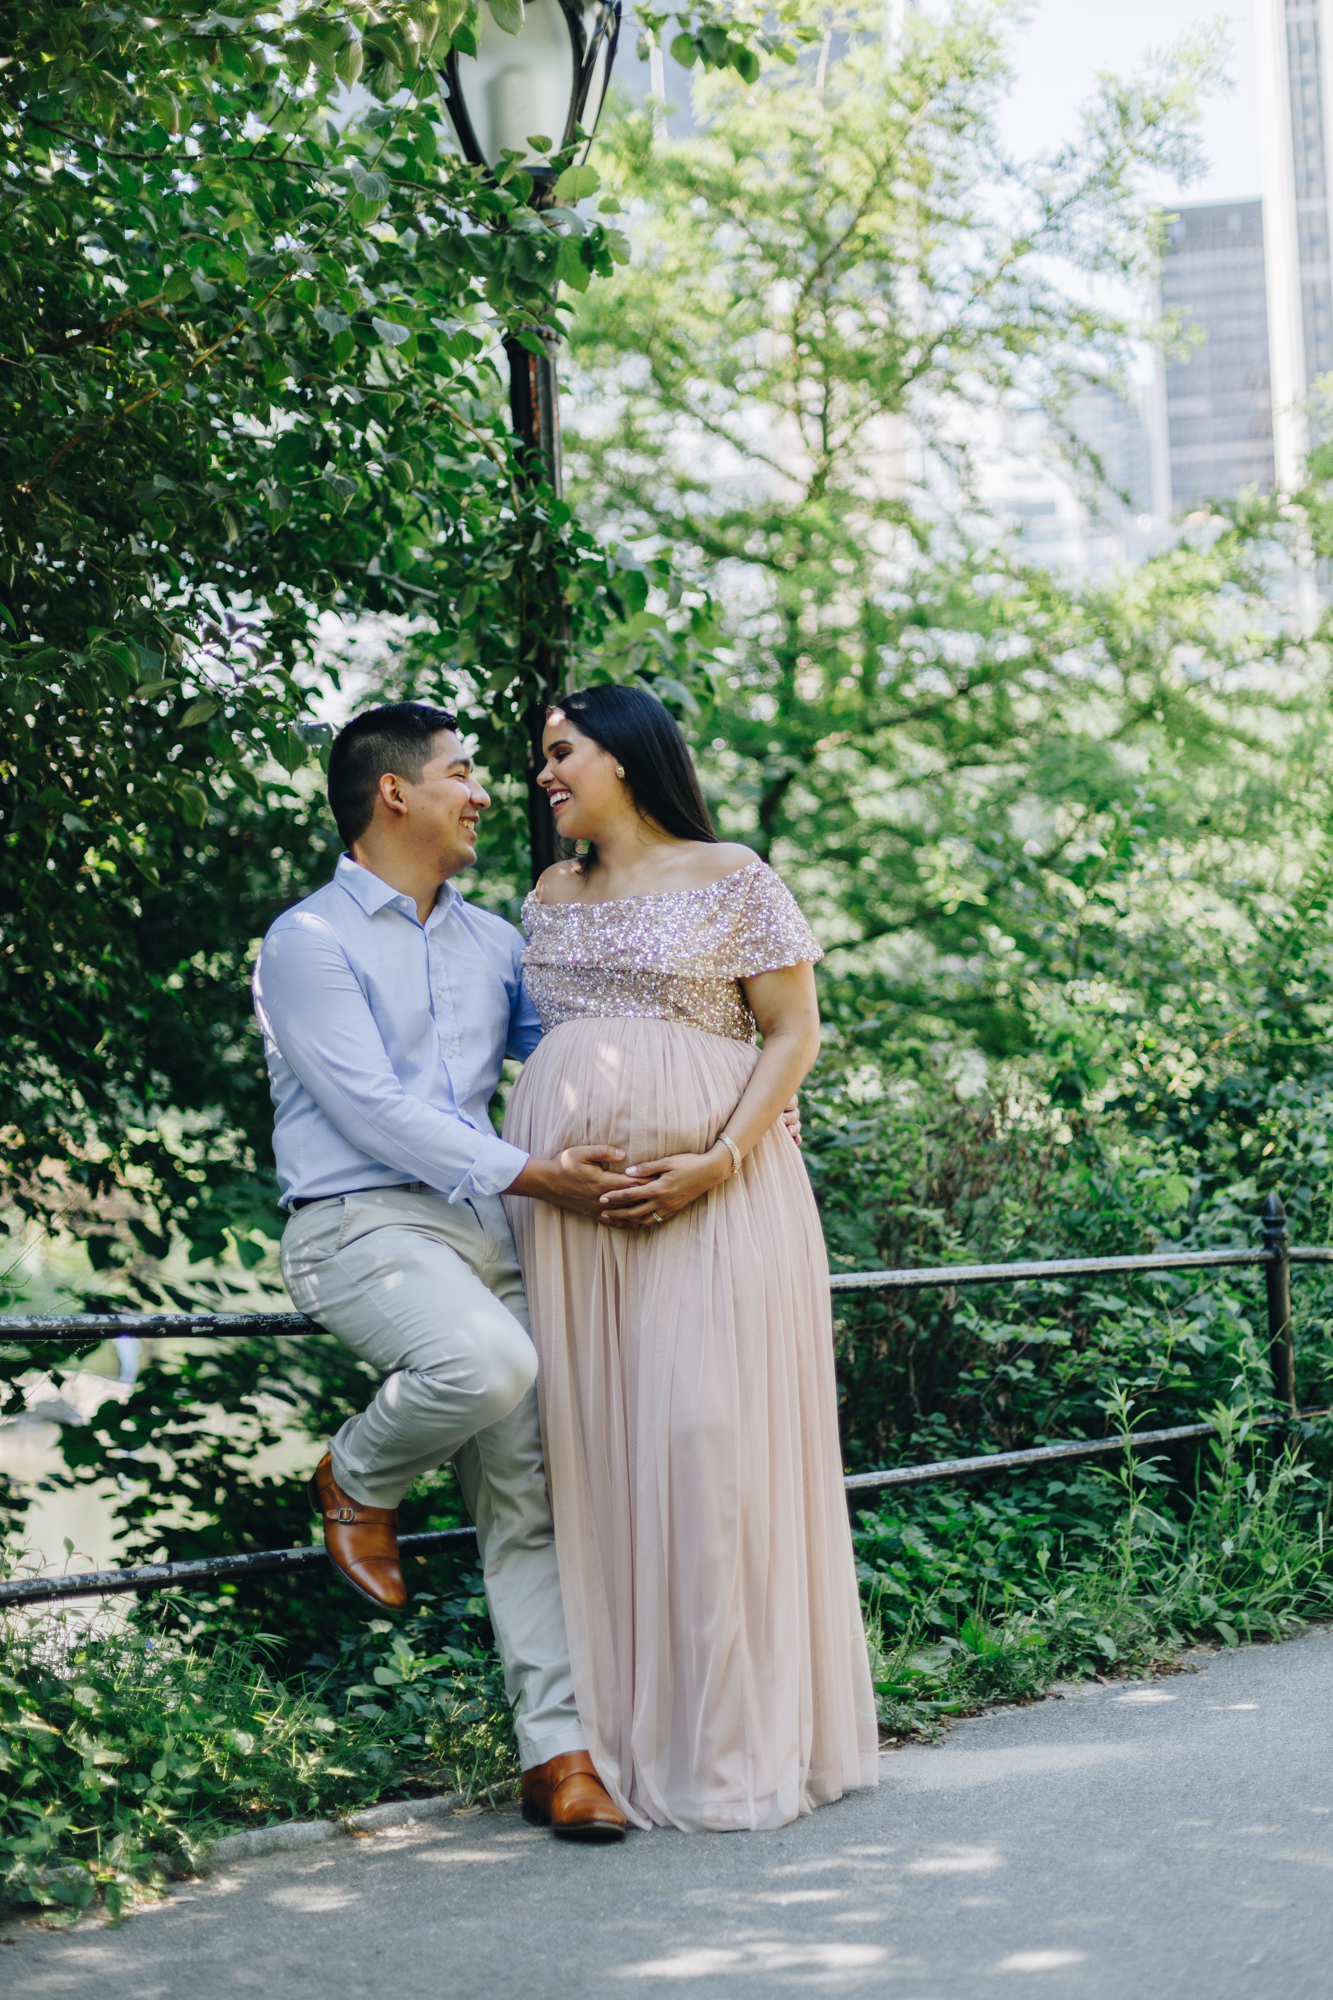 Vibrant Central Park Maternity Photos